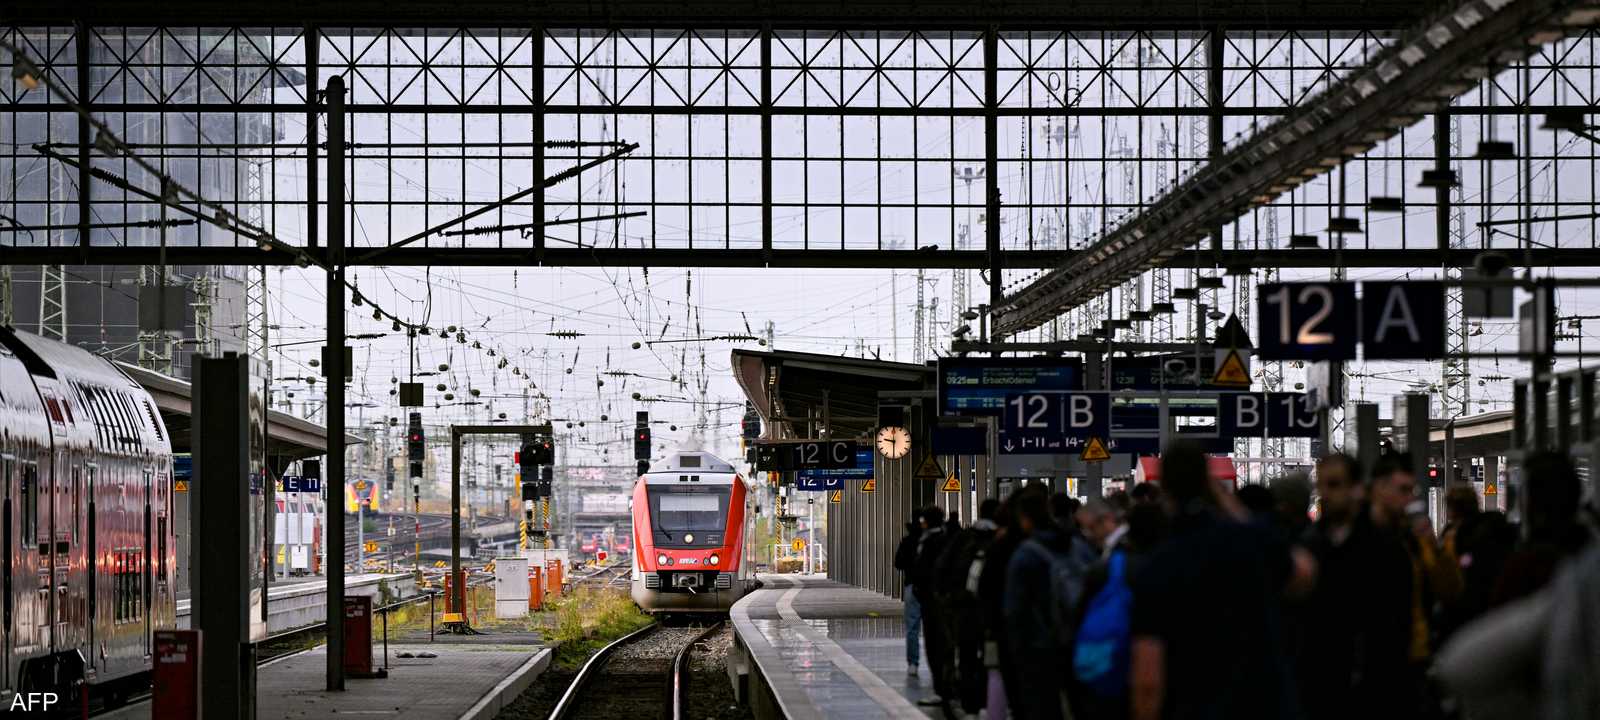 قطارات ألمانيا شبكة القطار سكك حديد ألمانية أوروبا أوروبية